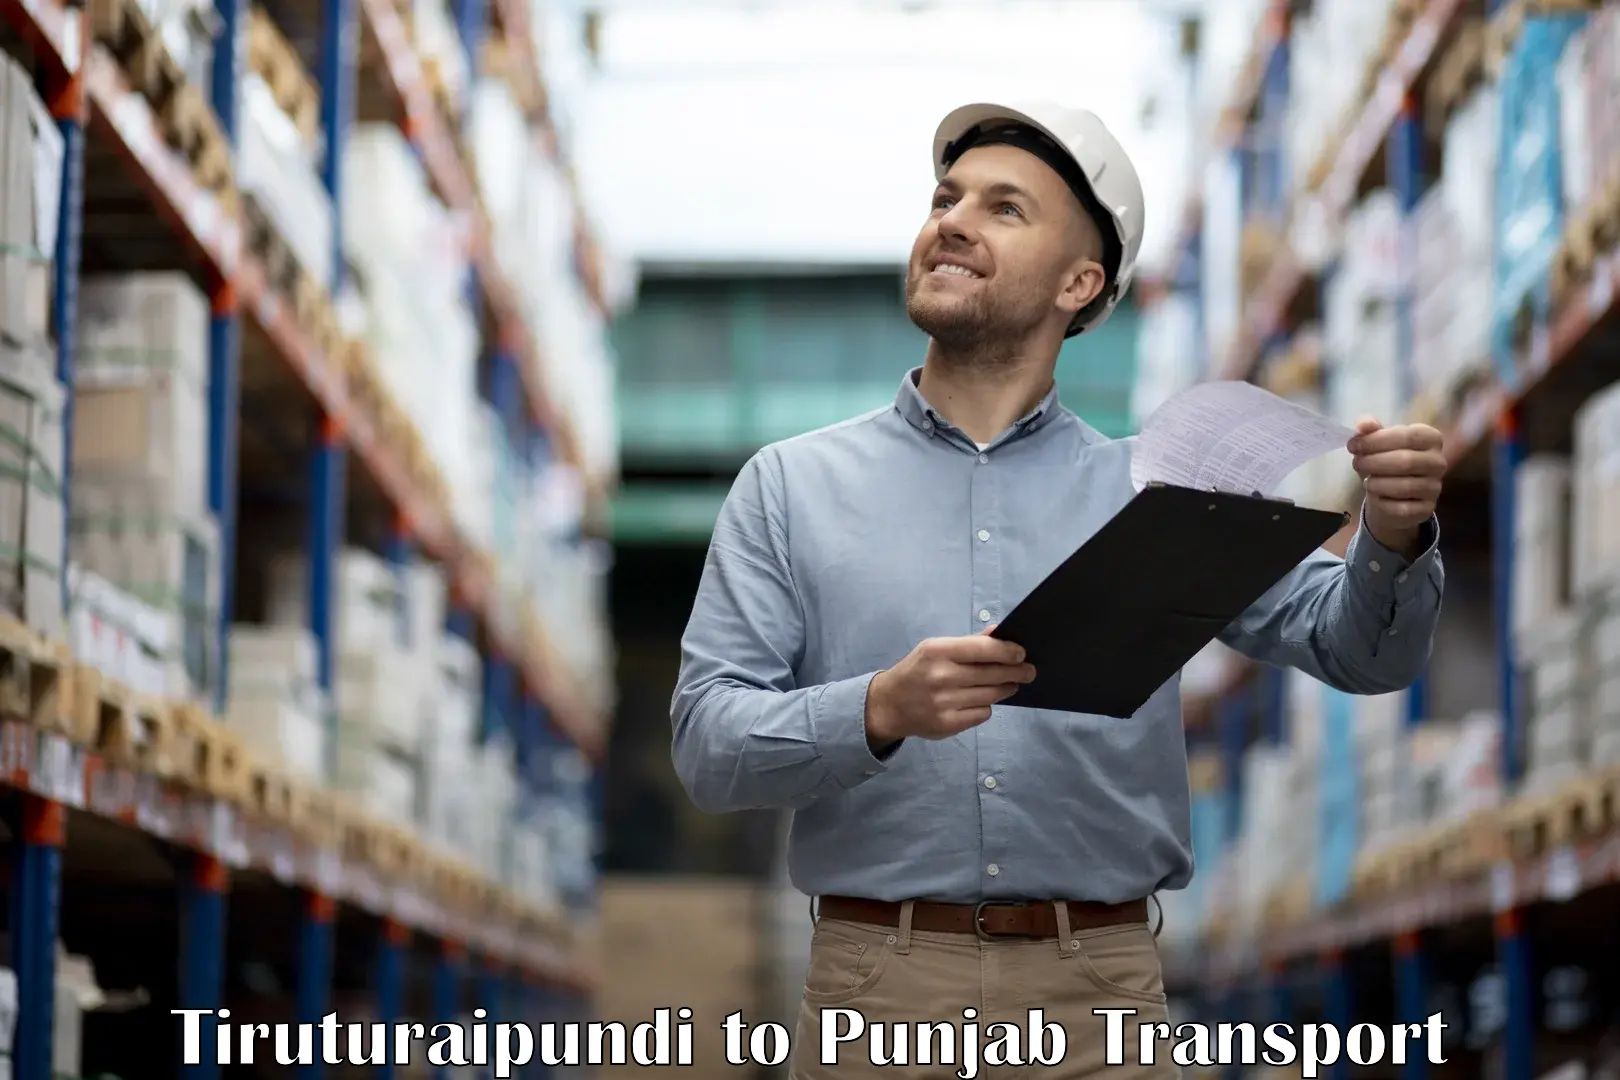 Road transport online services Tiruturaipundi to Nawanshahr